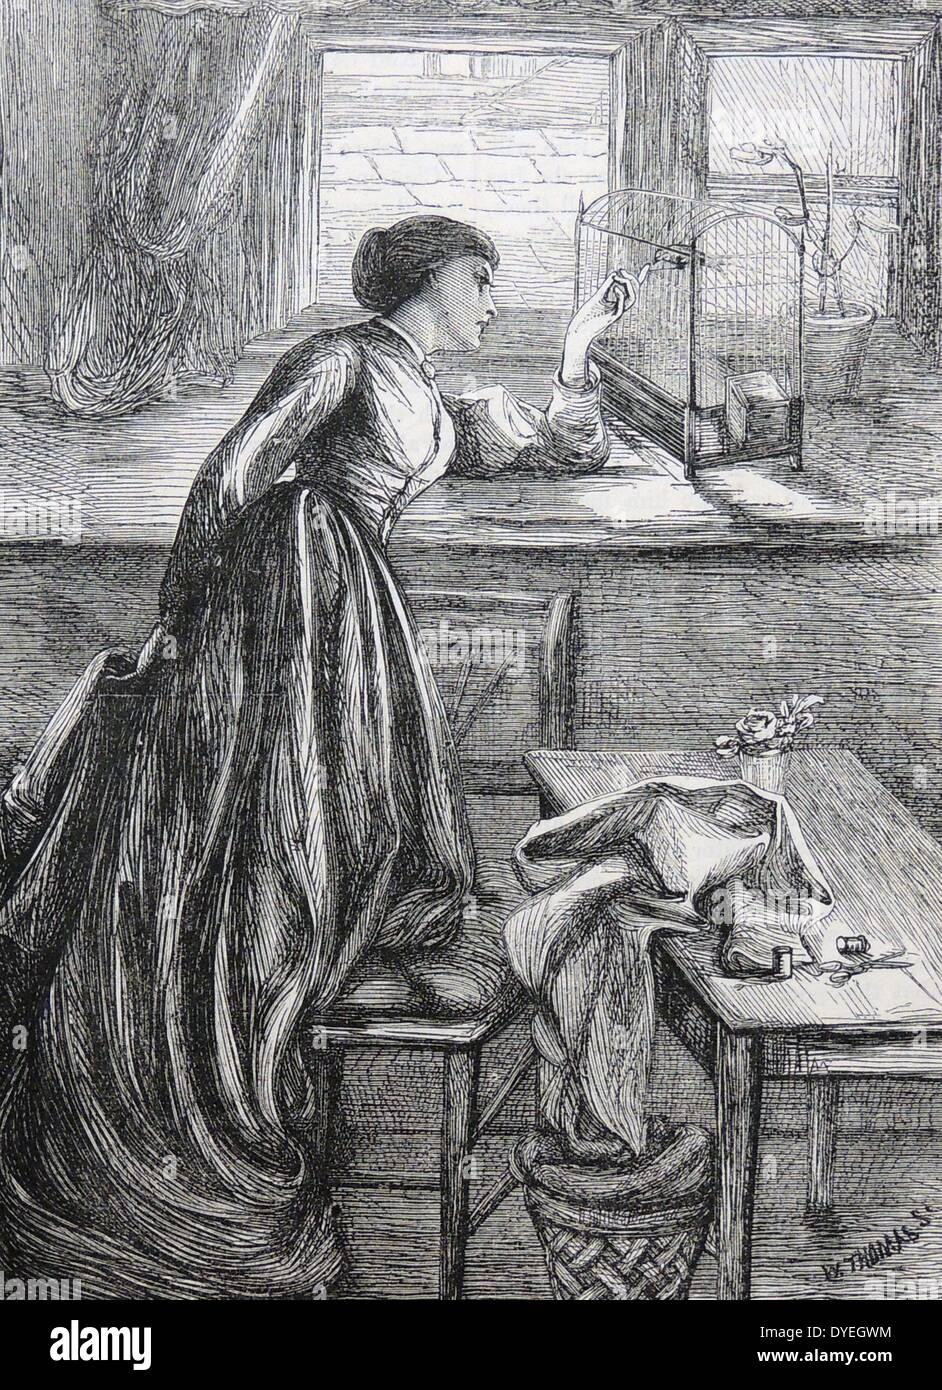 Arme Näherin unter Bruch von ihrer Arbeit zu Ihrem kanarischen in seinem Käfig zu sprechen. Illustration von Kate Edwards (1865-1879), London, 1868. Stockfoto